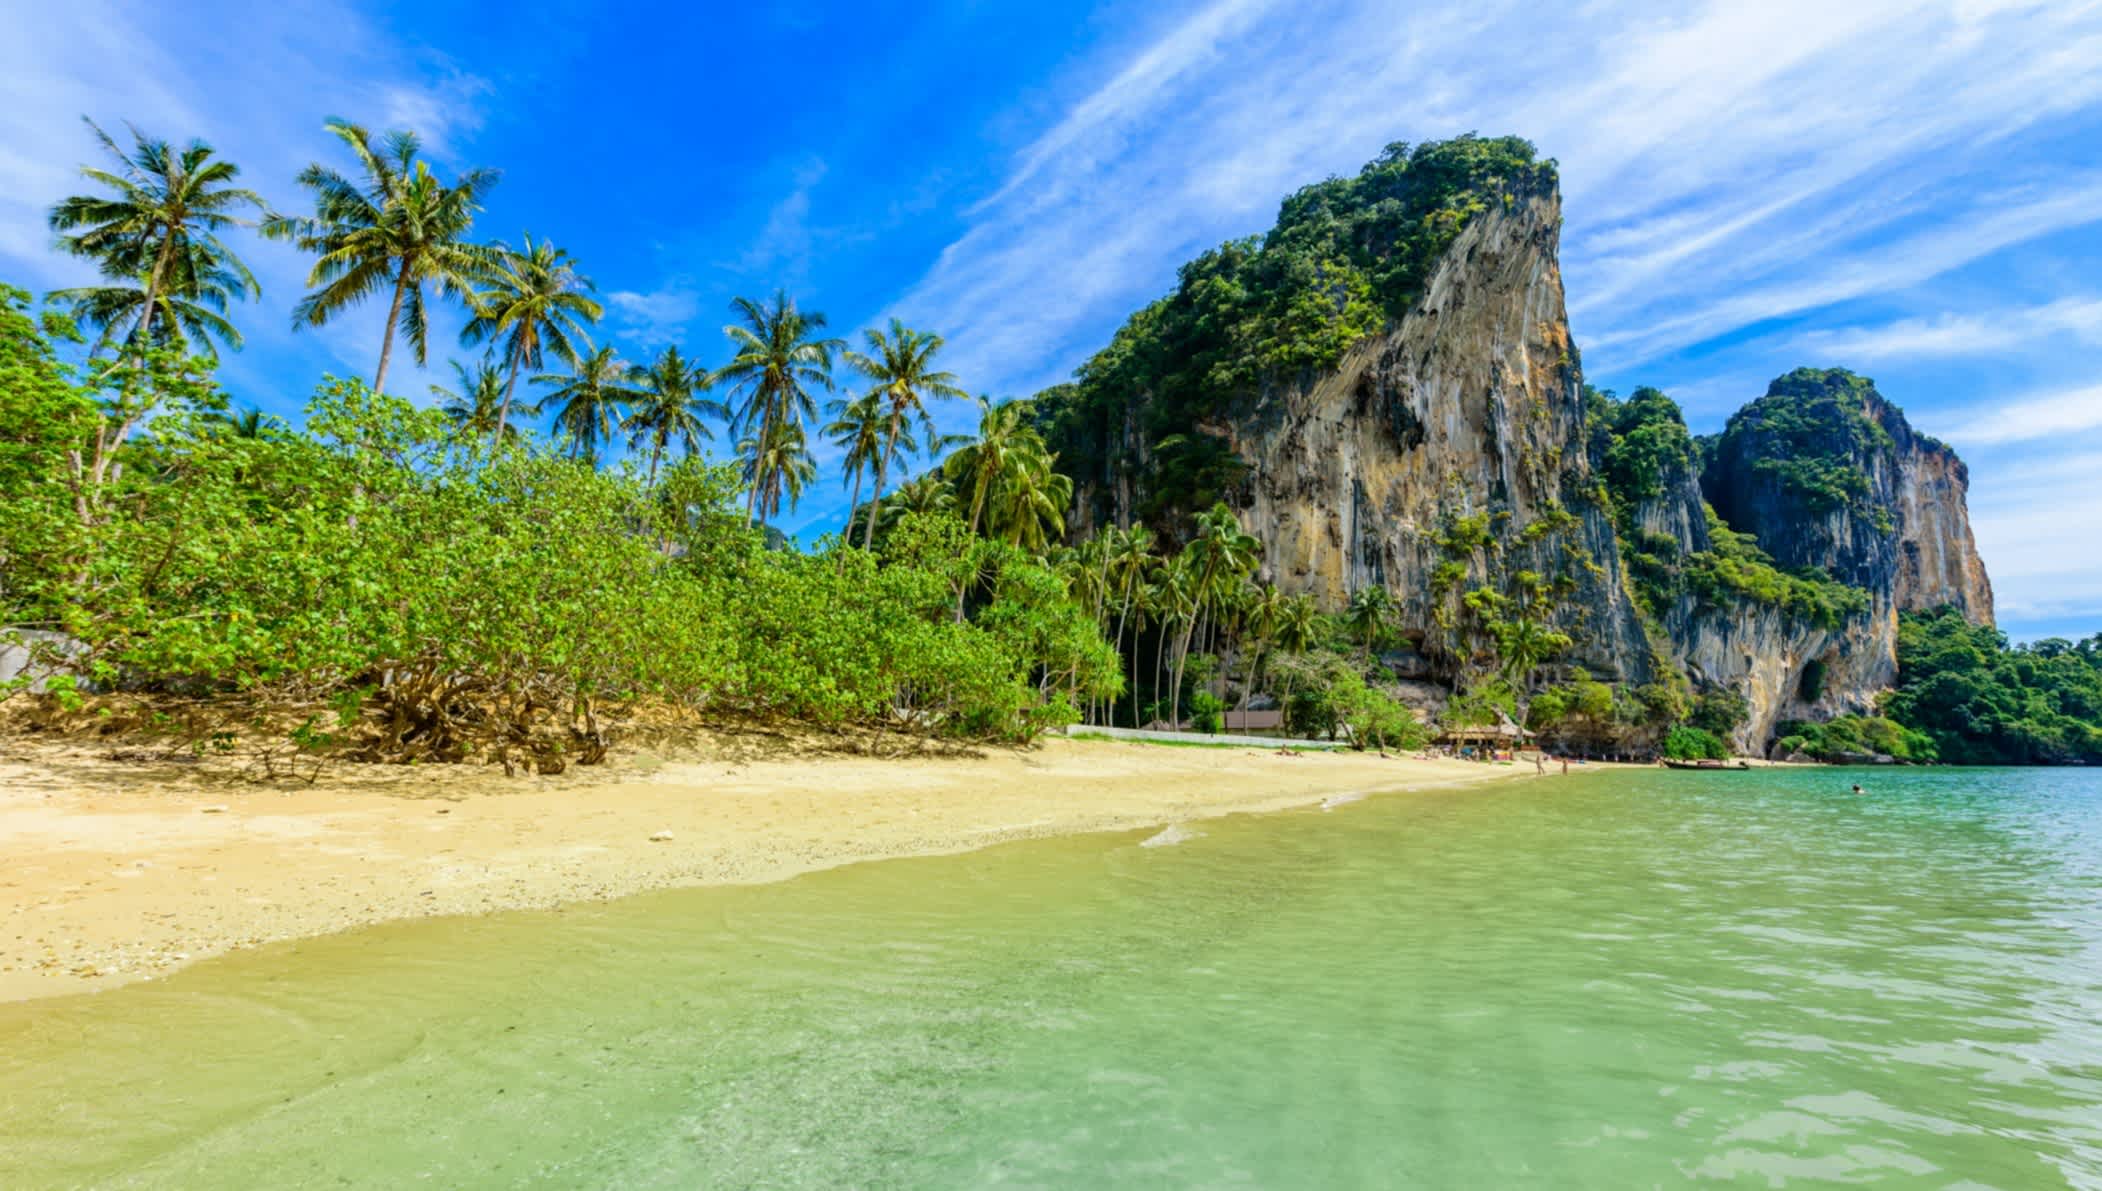 Vue du sable doré bordé d'une eau cristalline et d'un paysage verdoyant sur la plage de Tonsai en Thaïlande 